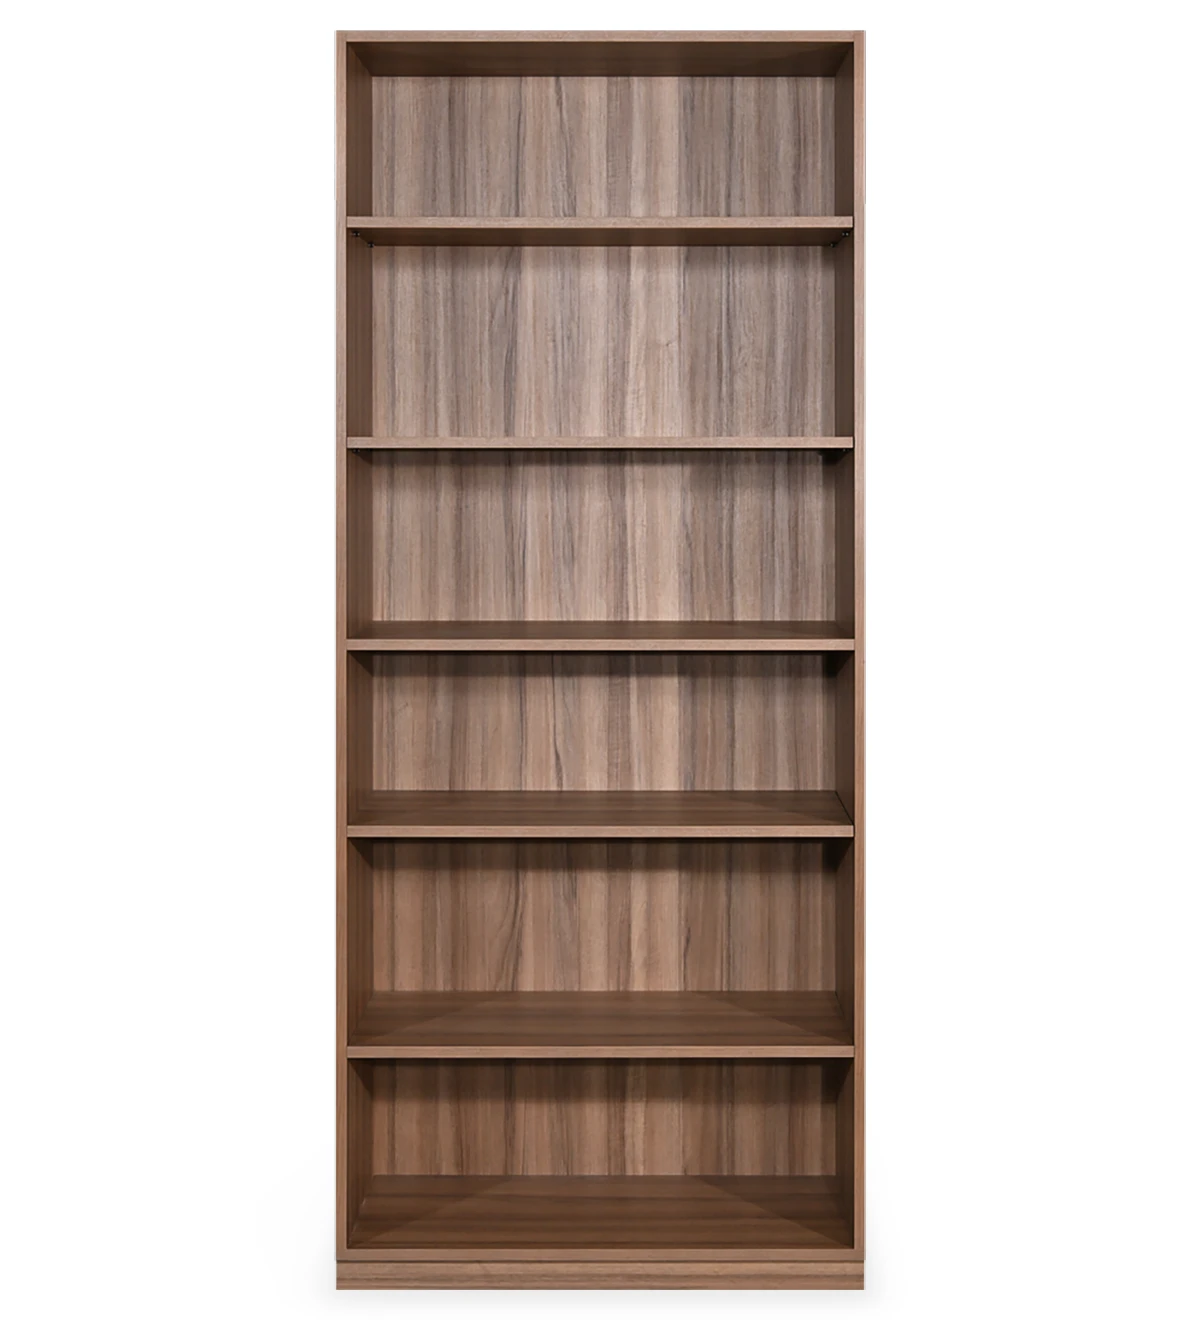 Librería alta en nogal, con estantes extraíbles.